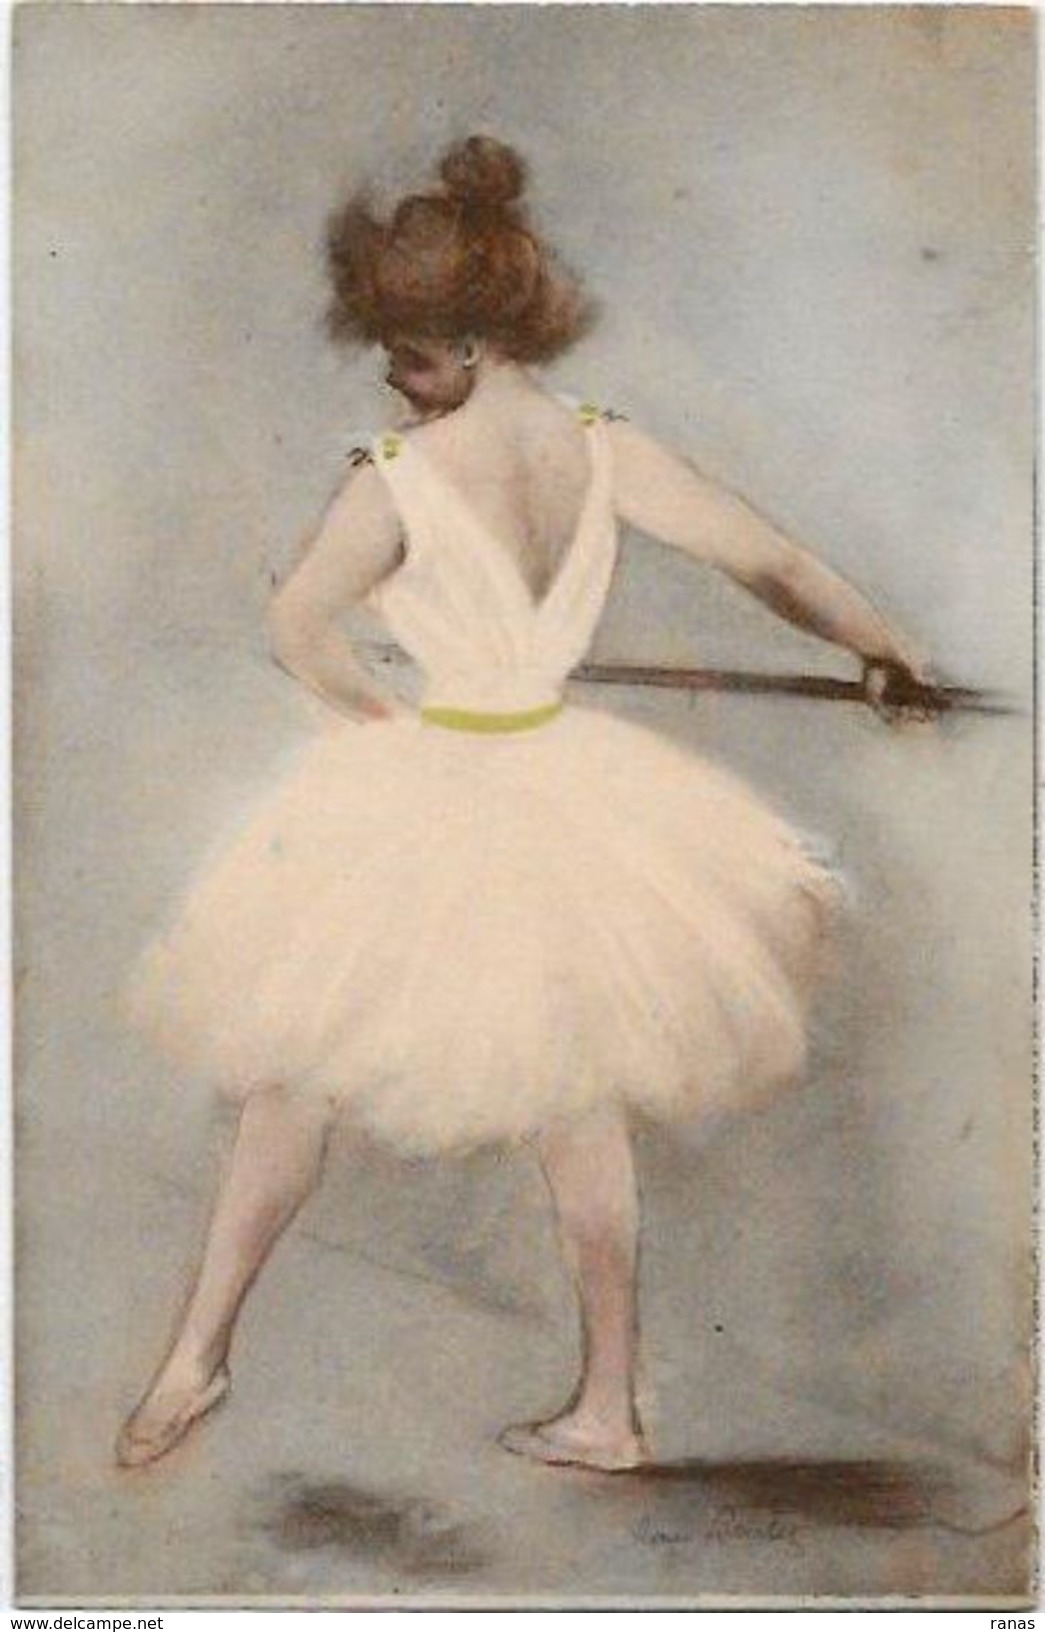 CPA BOUTET Danse Art Nouveau Femme Girl Woman Non Circulé - Boutet